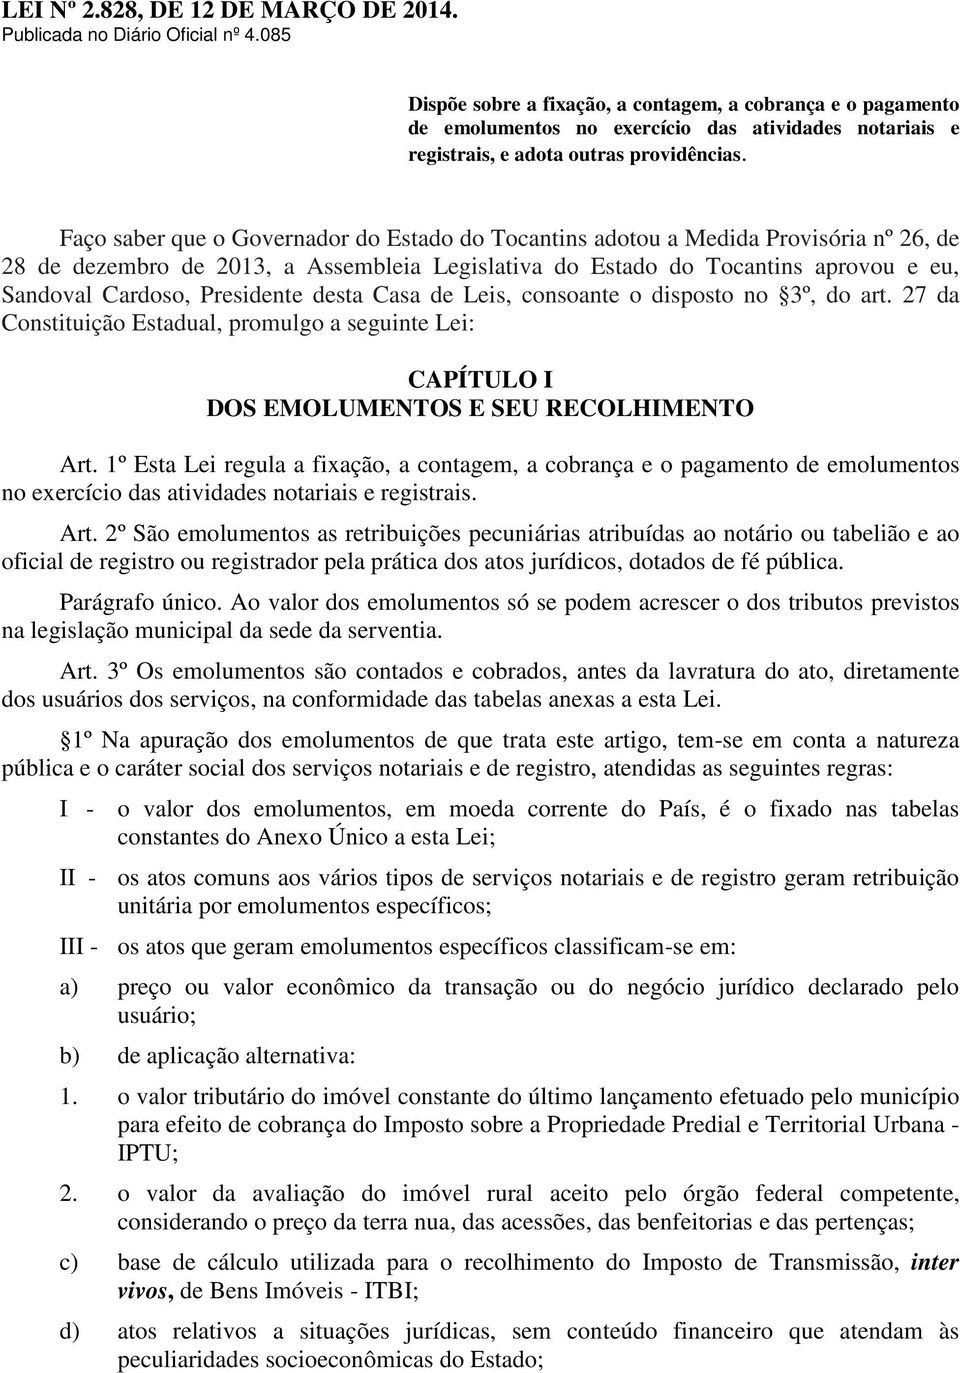 Faço saber que o Governador do Estado do Tocantins adotou a Medida Provisória nº 26, de 28 de dezembro de 2013, a Assembleia Legislativa do Estado do Tocantins aprovou e eu, Sandoval Cardoso,